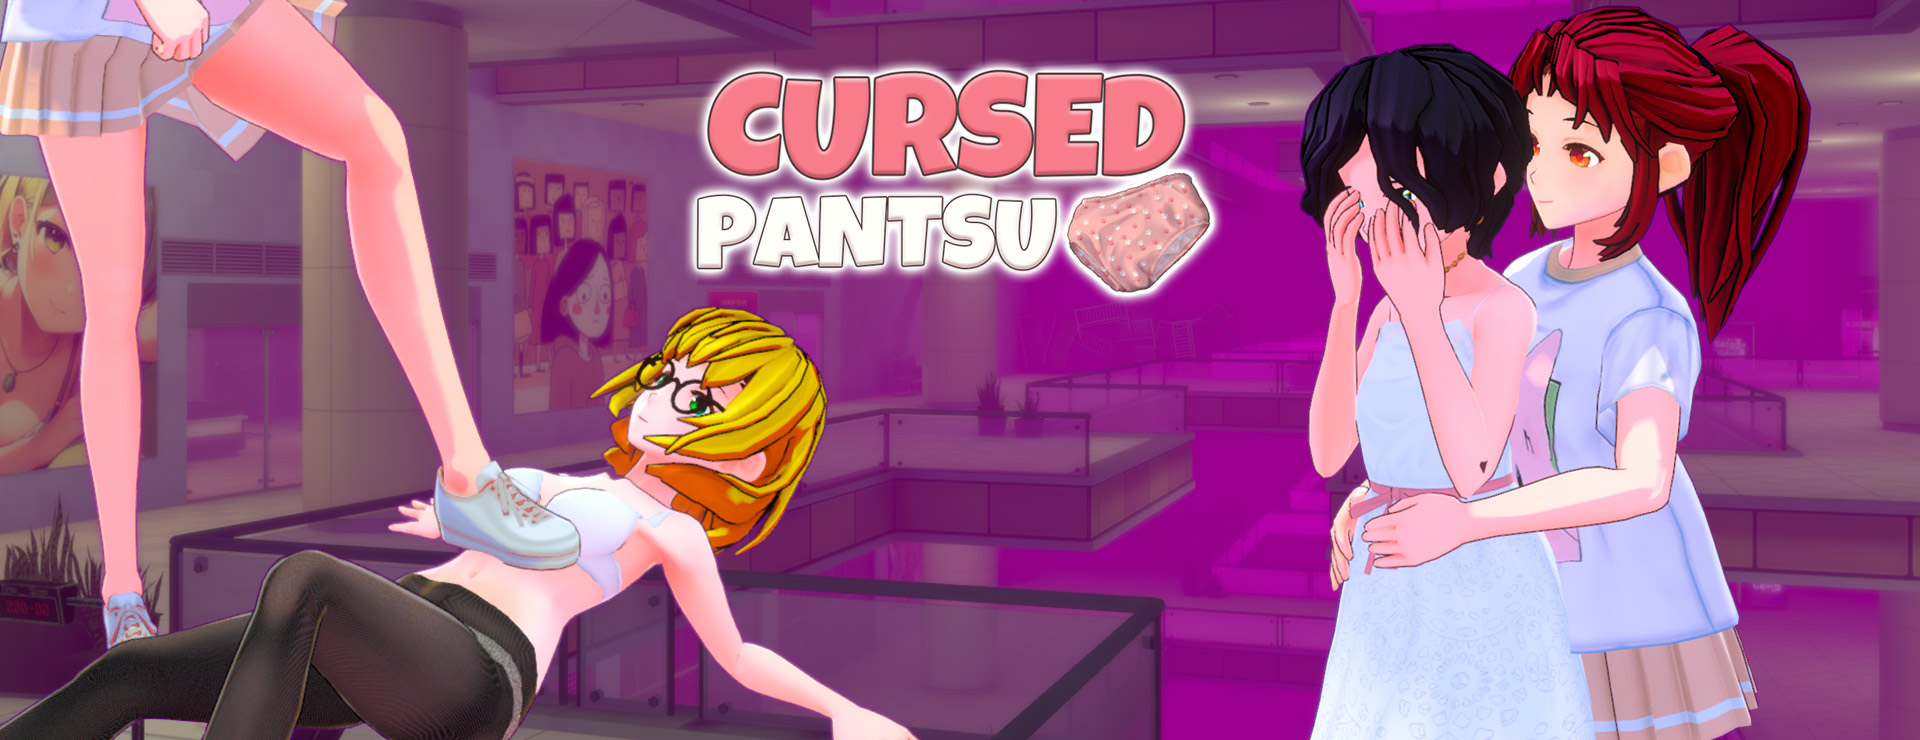 Cursed Pantsu - Aventura Acción Juego